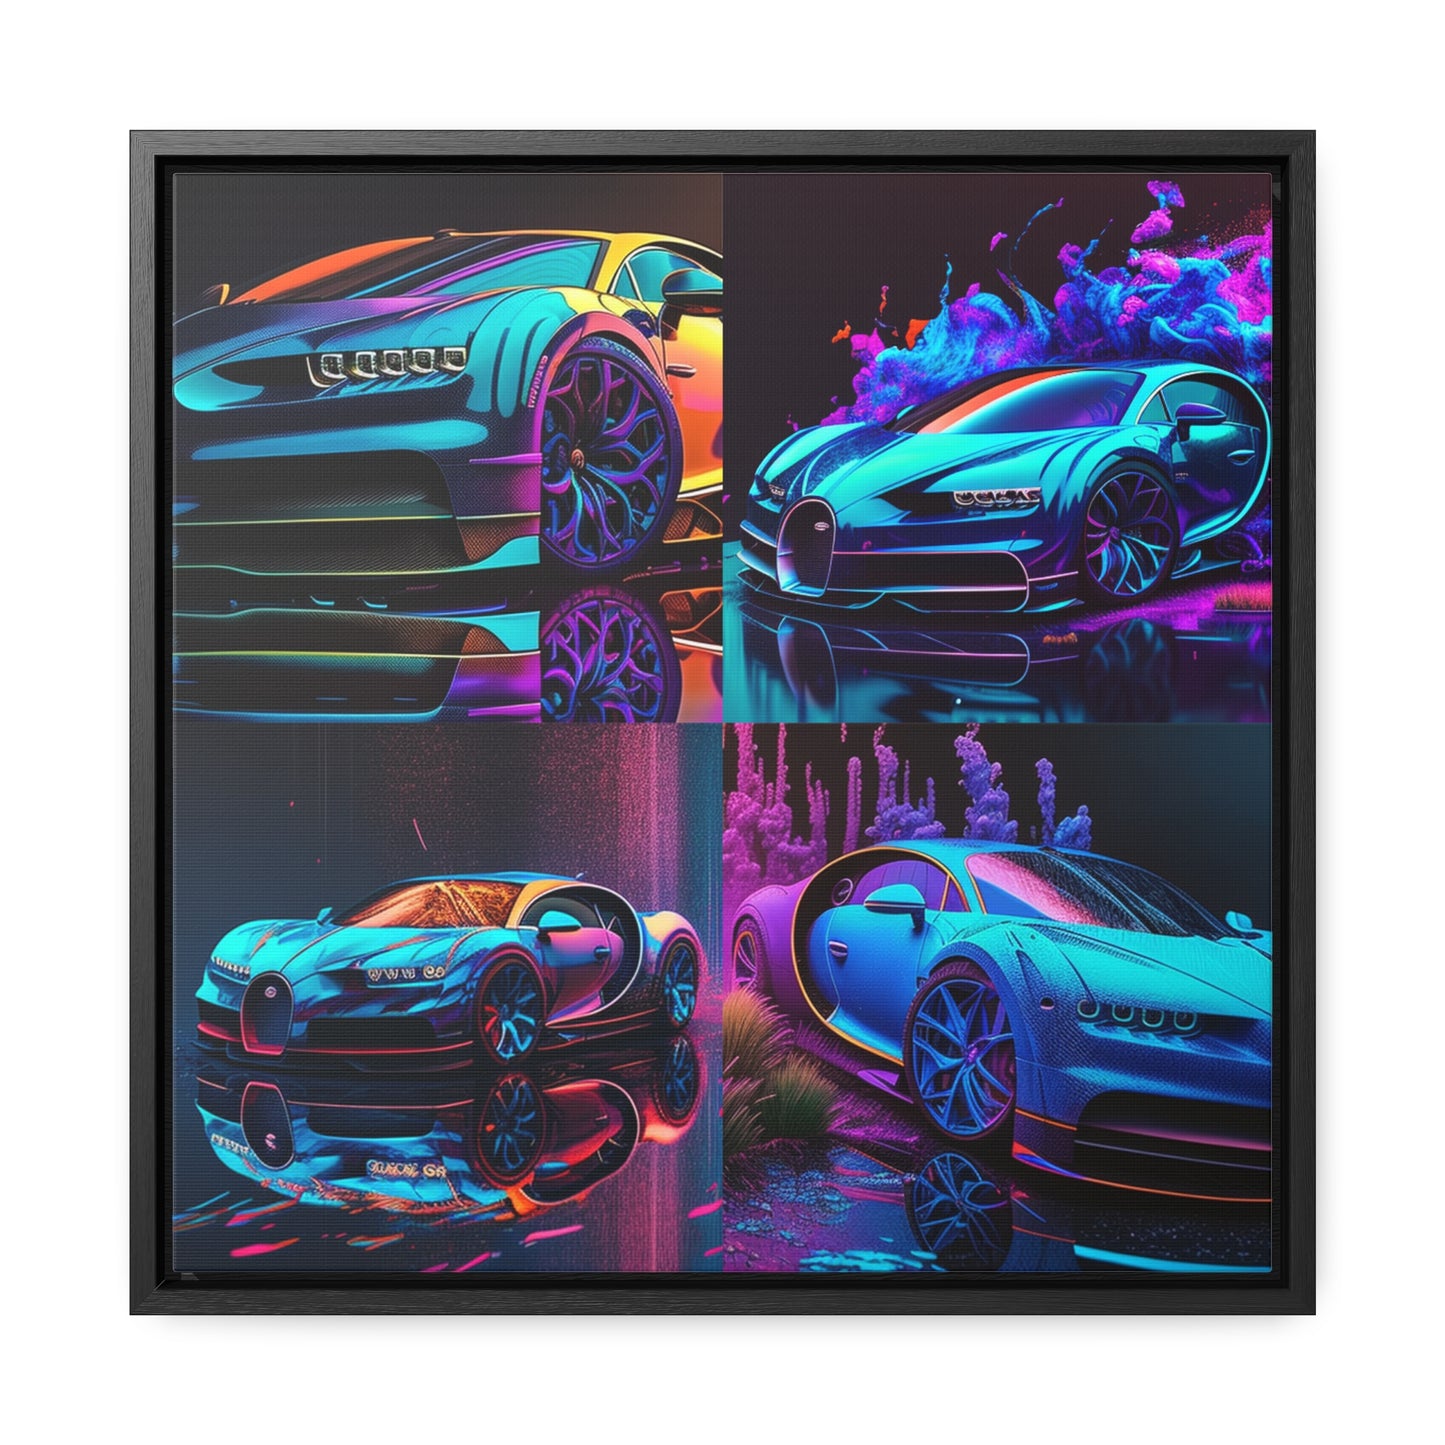 Gallery Canvas Wraps, Square Frame Bugatti Neon Chiron 5